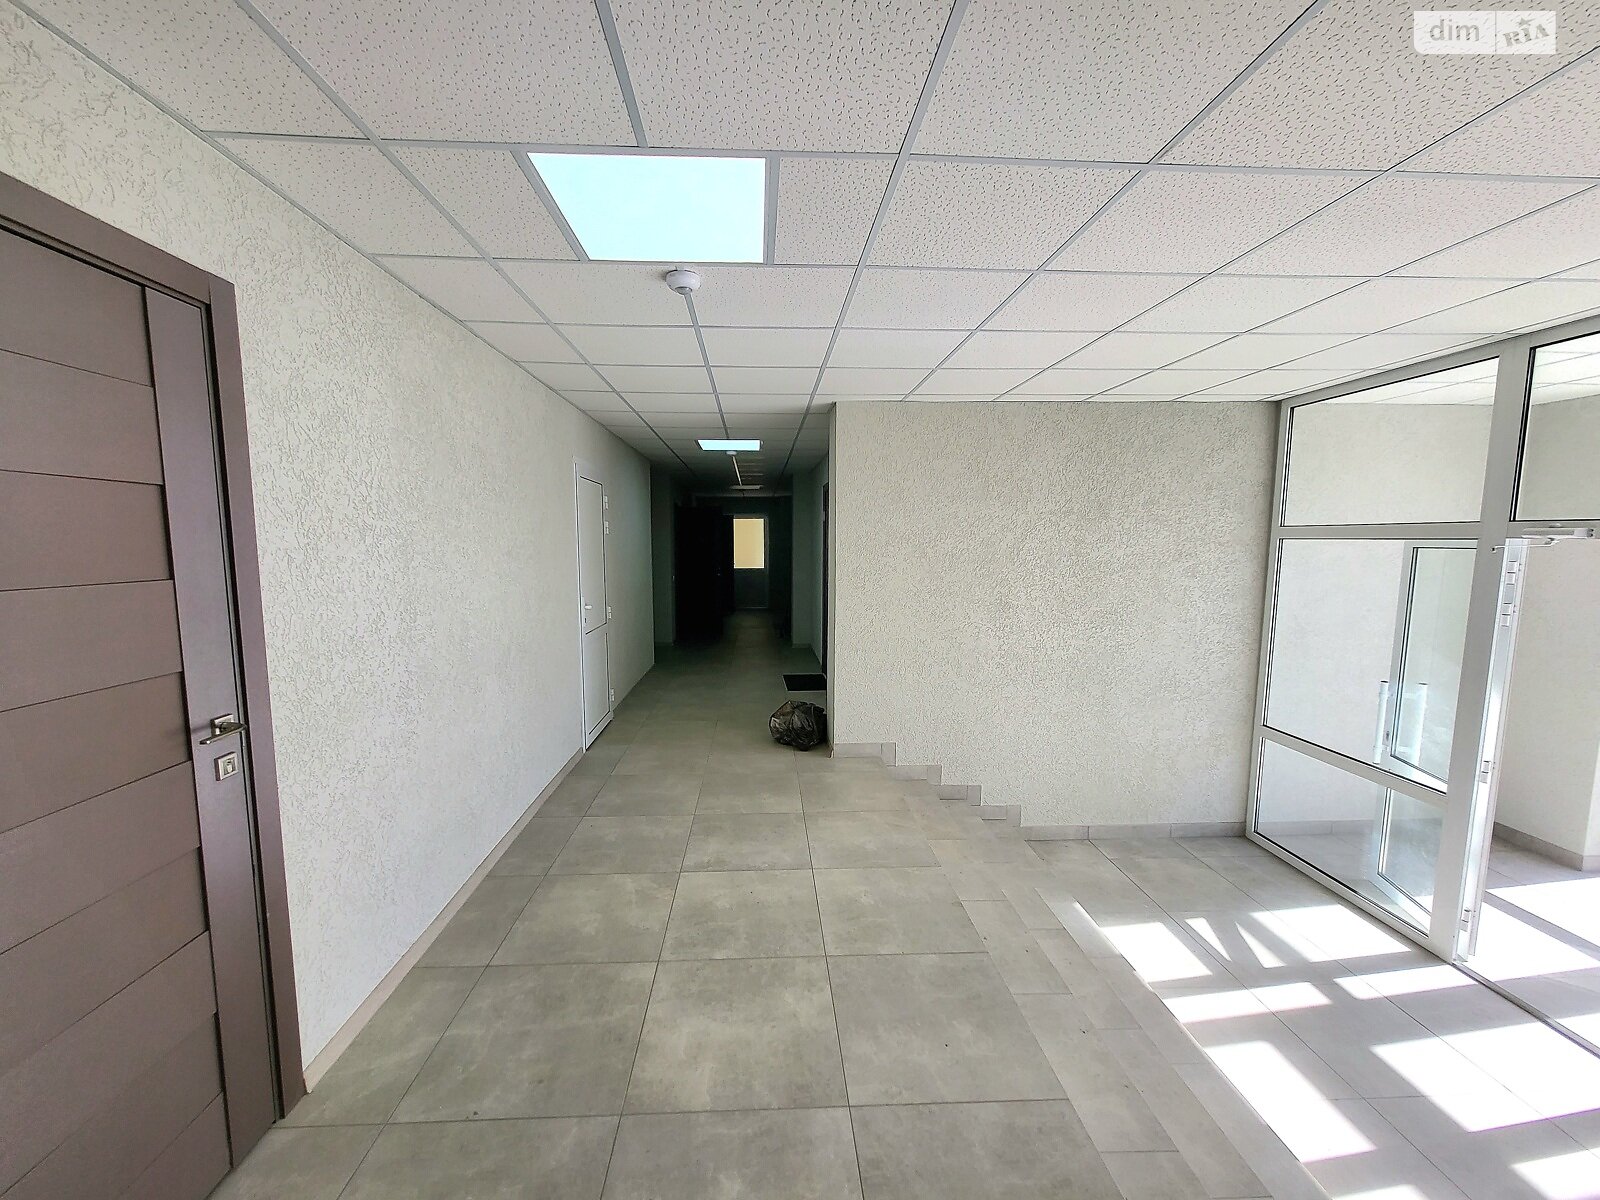 Аренда офисного помещения в Якушинцах, Хмельницьке шосе, помещений - 4, этаж - 1 фото 1